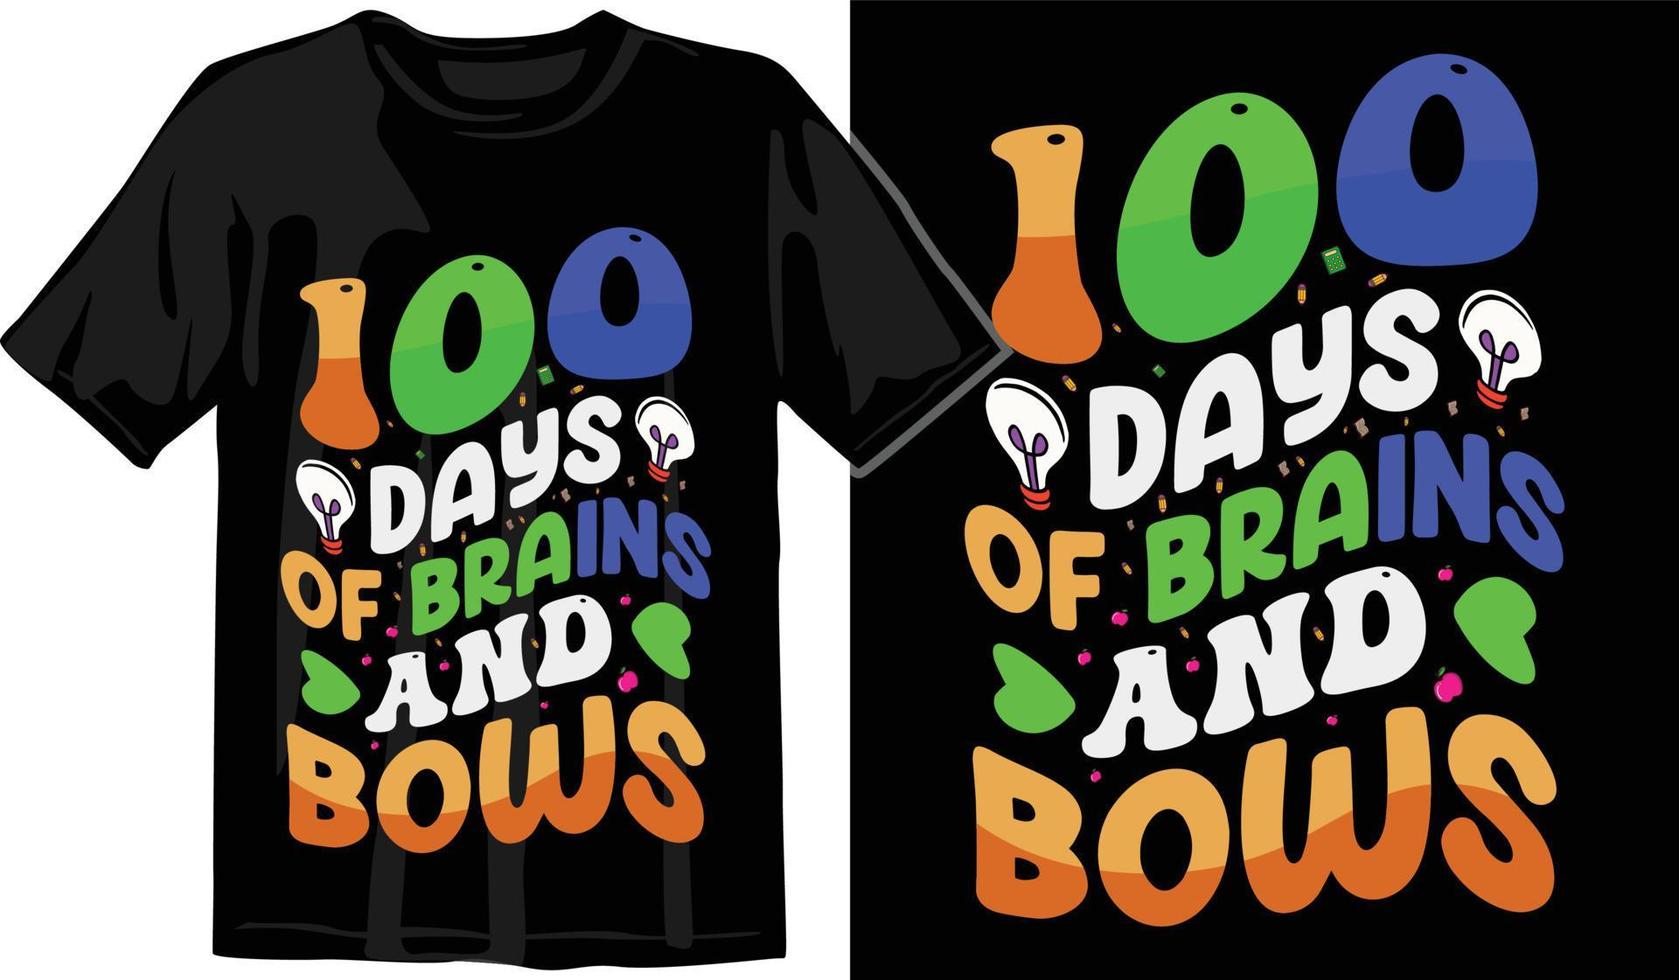 100:e dagar av skola, hundra dagar t skjorta design, 100:e dagar firande t skjorta vektor